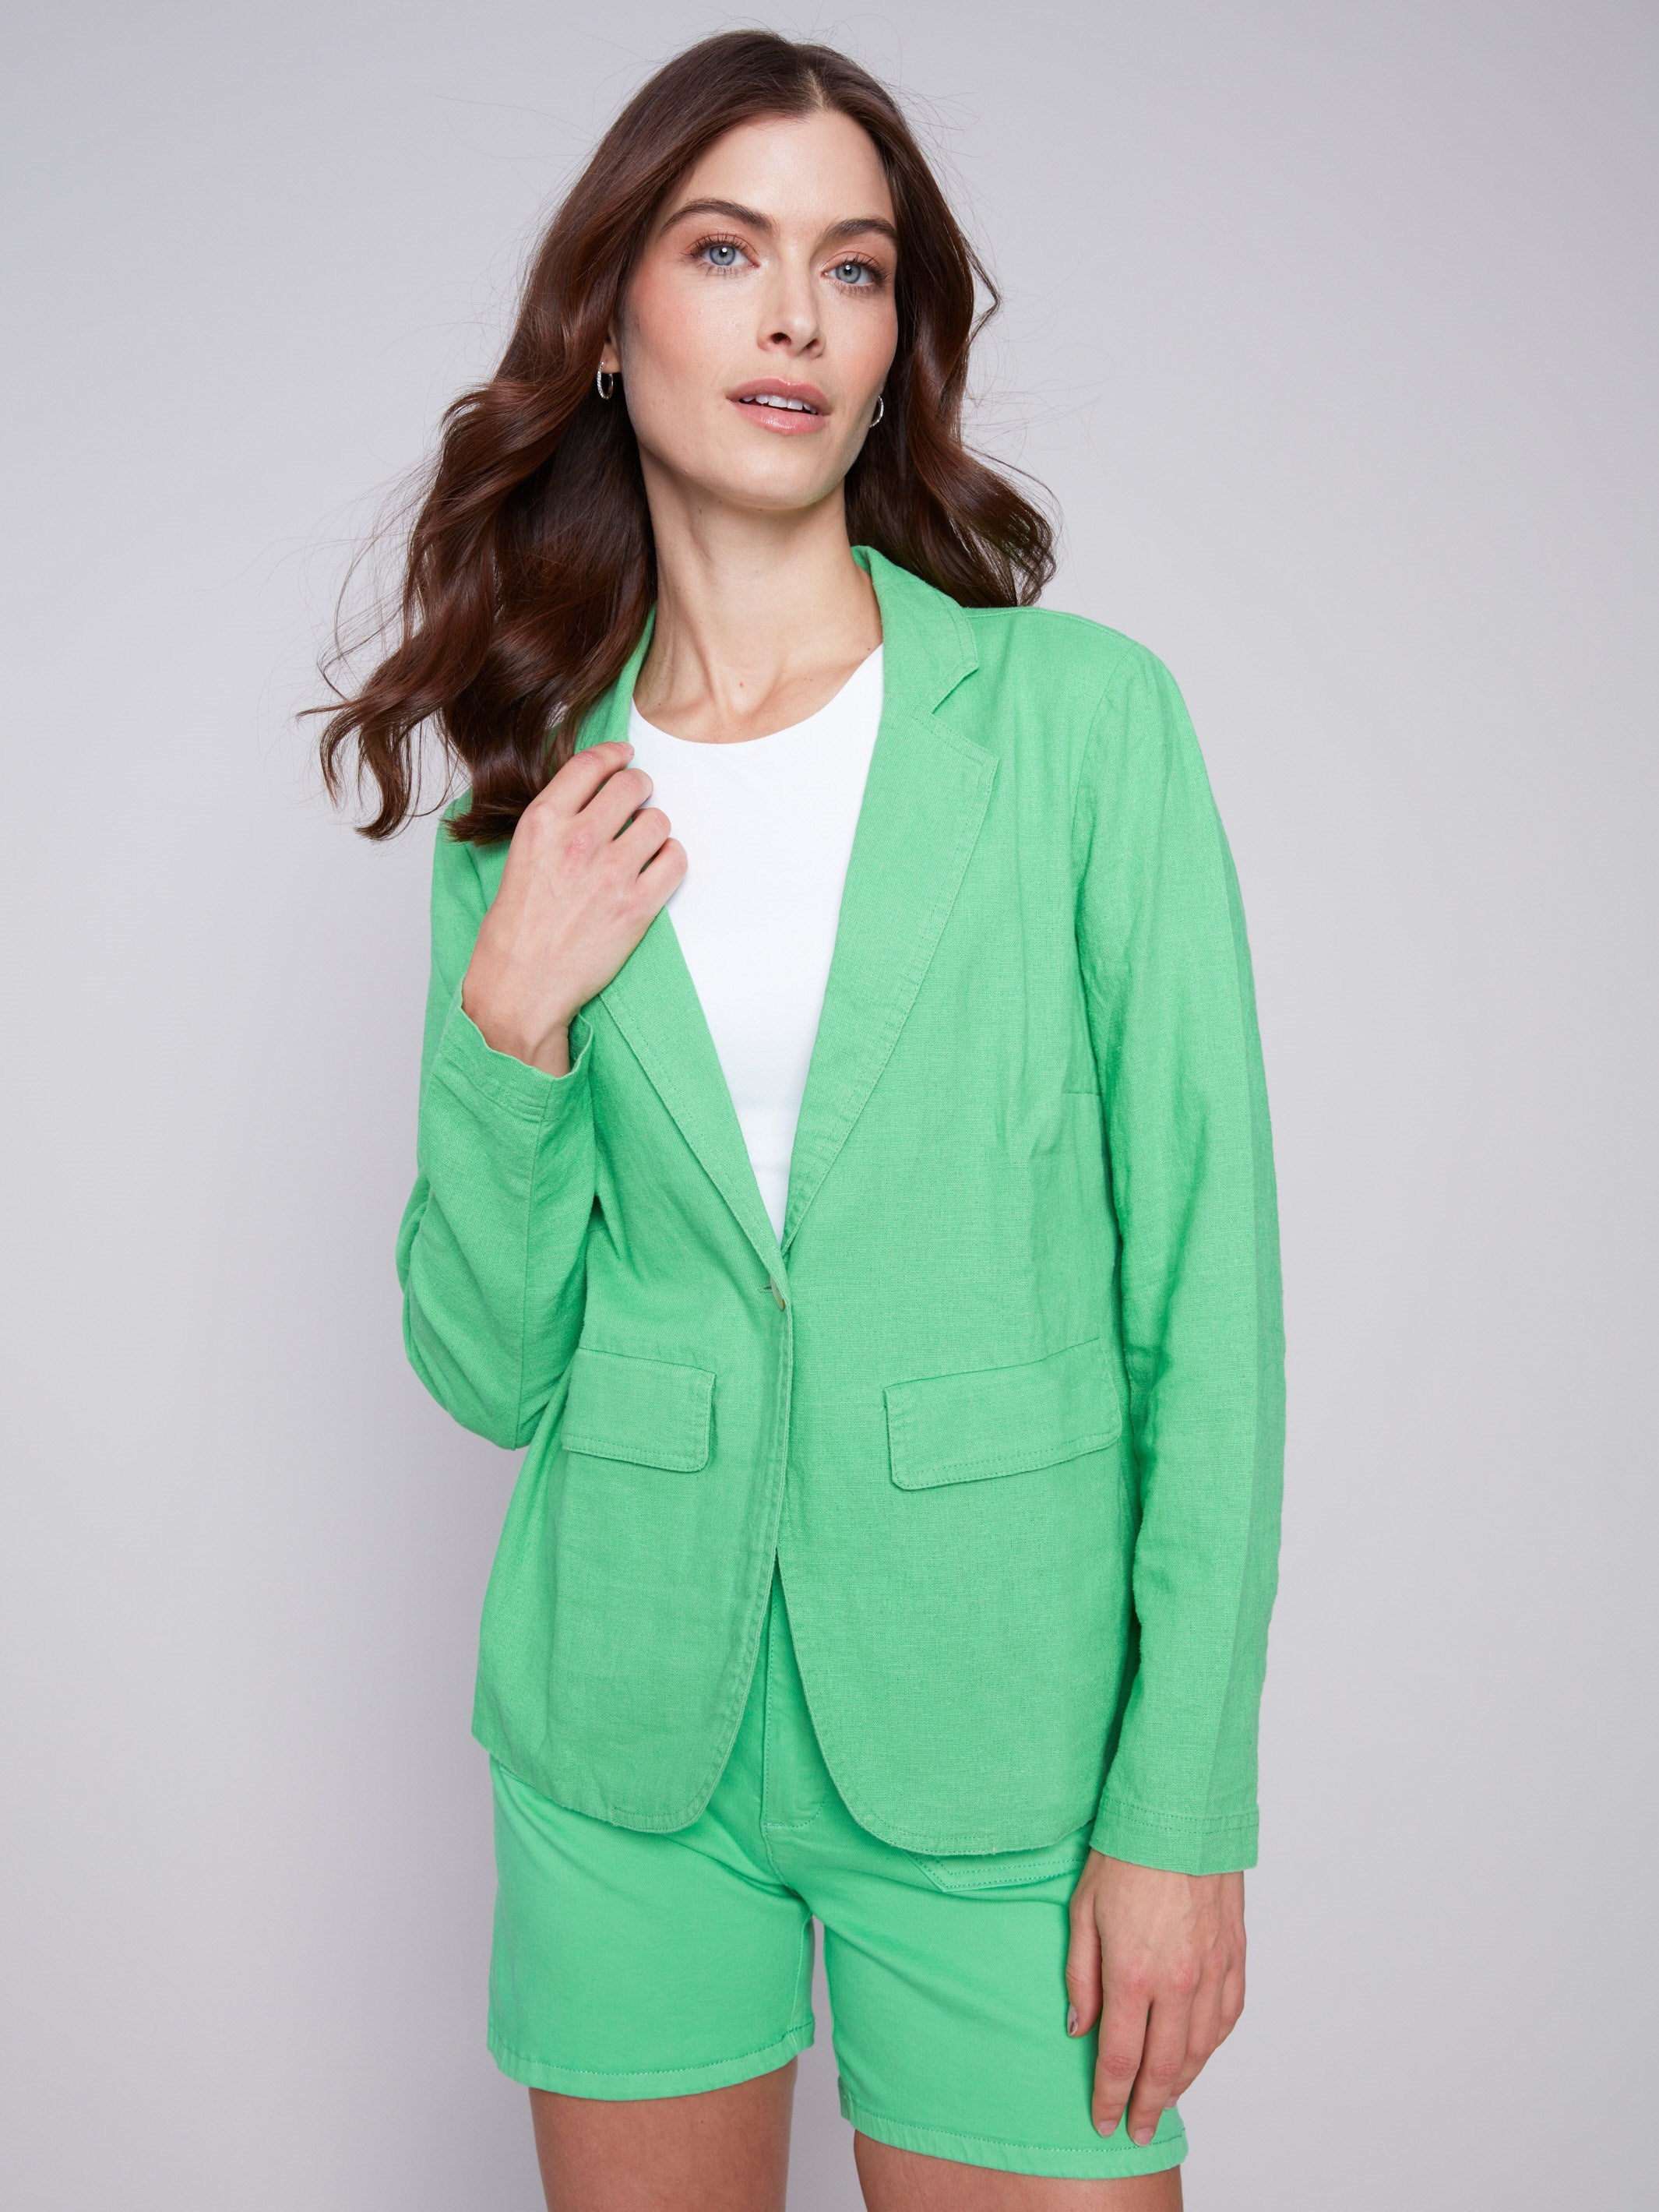 Charlie B Light Linen Blend Blazer - Emerald - Image 1